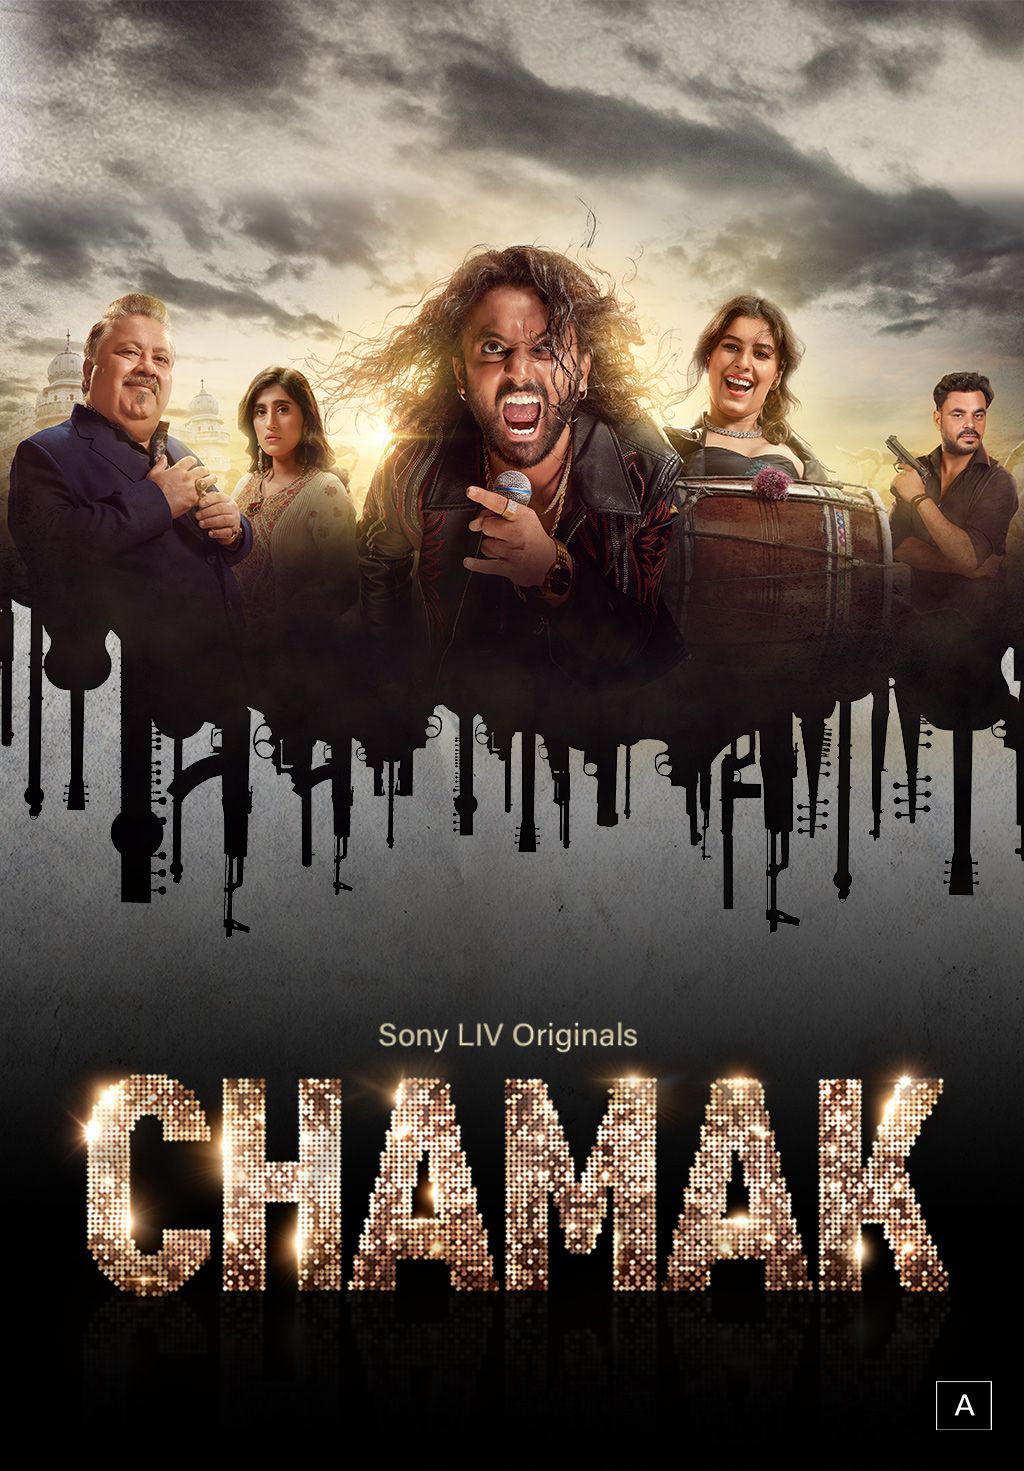 Chamak (Hindi)